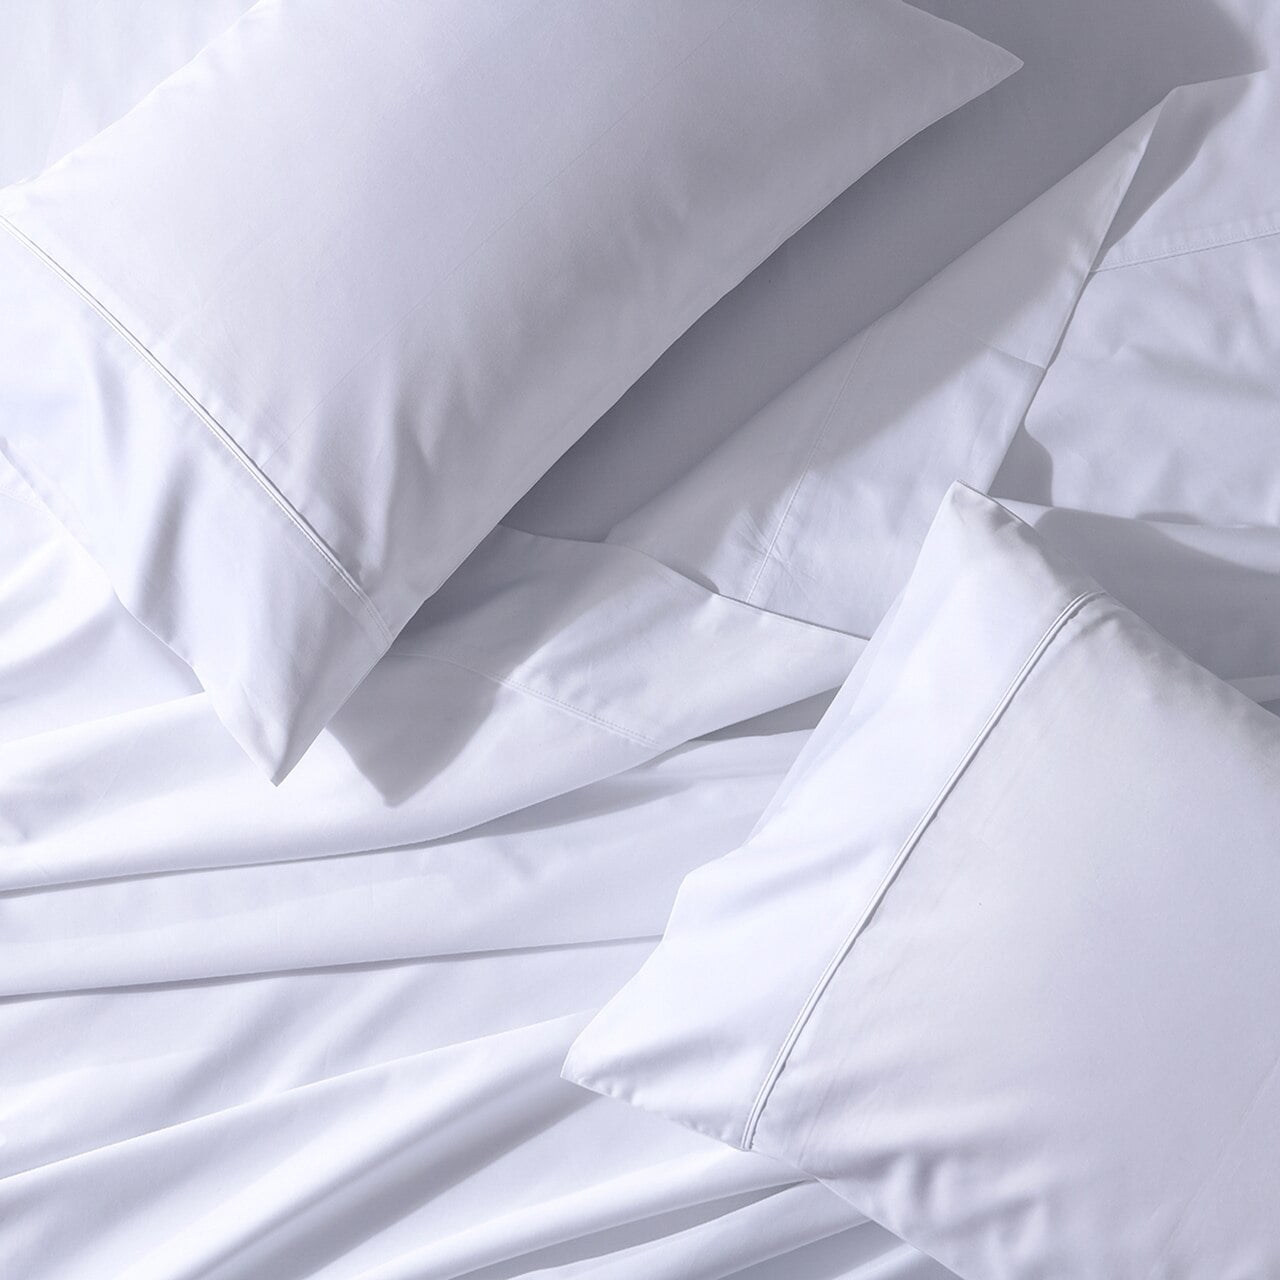 Cri Soft Split King Adjustable Bed, Sheets For Dual King Adjustable Bed